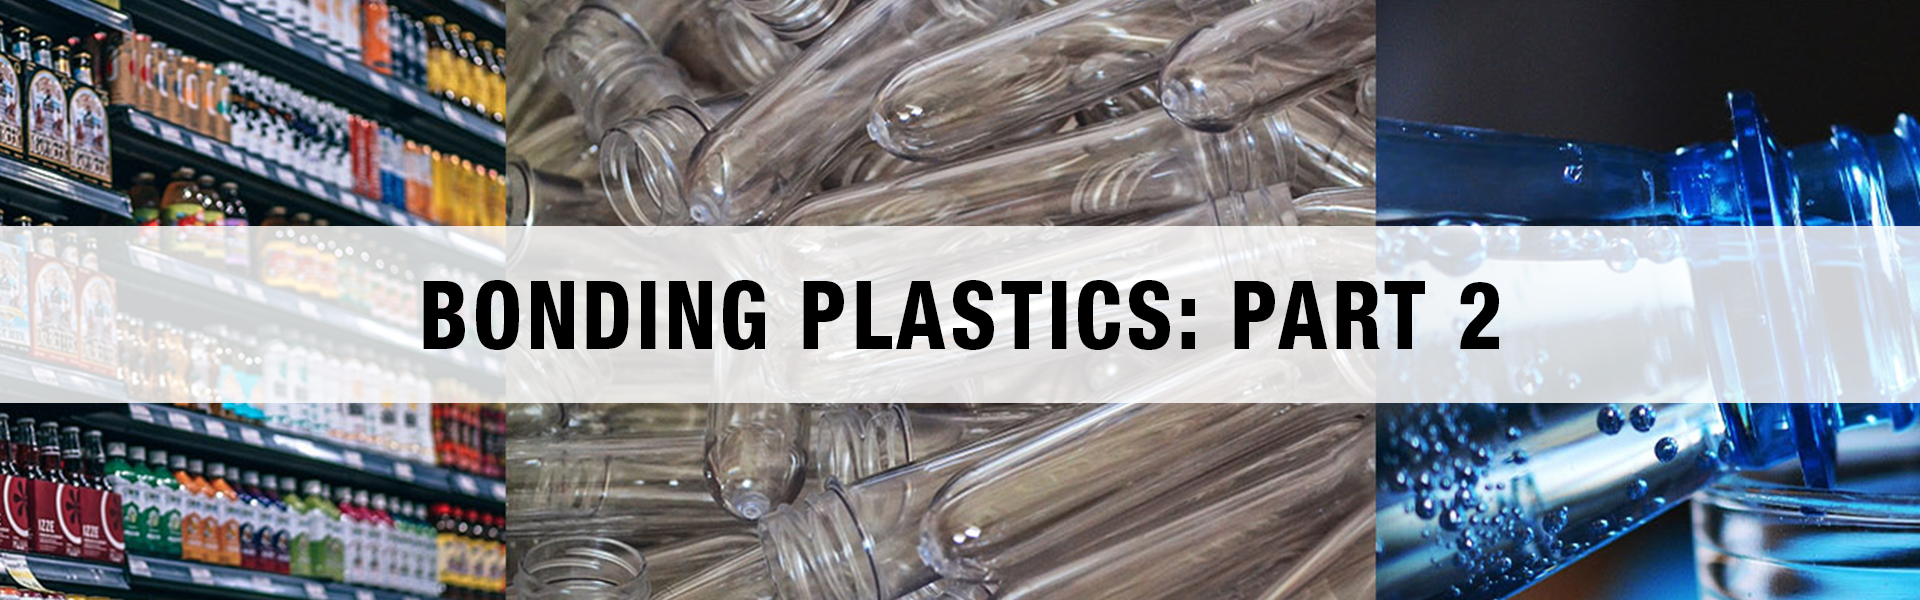 Bonding to Plastics: Part 2